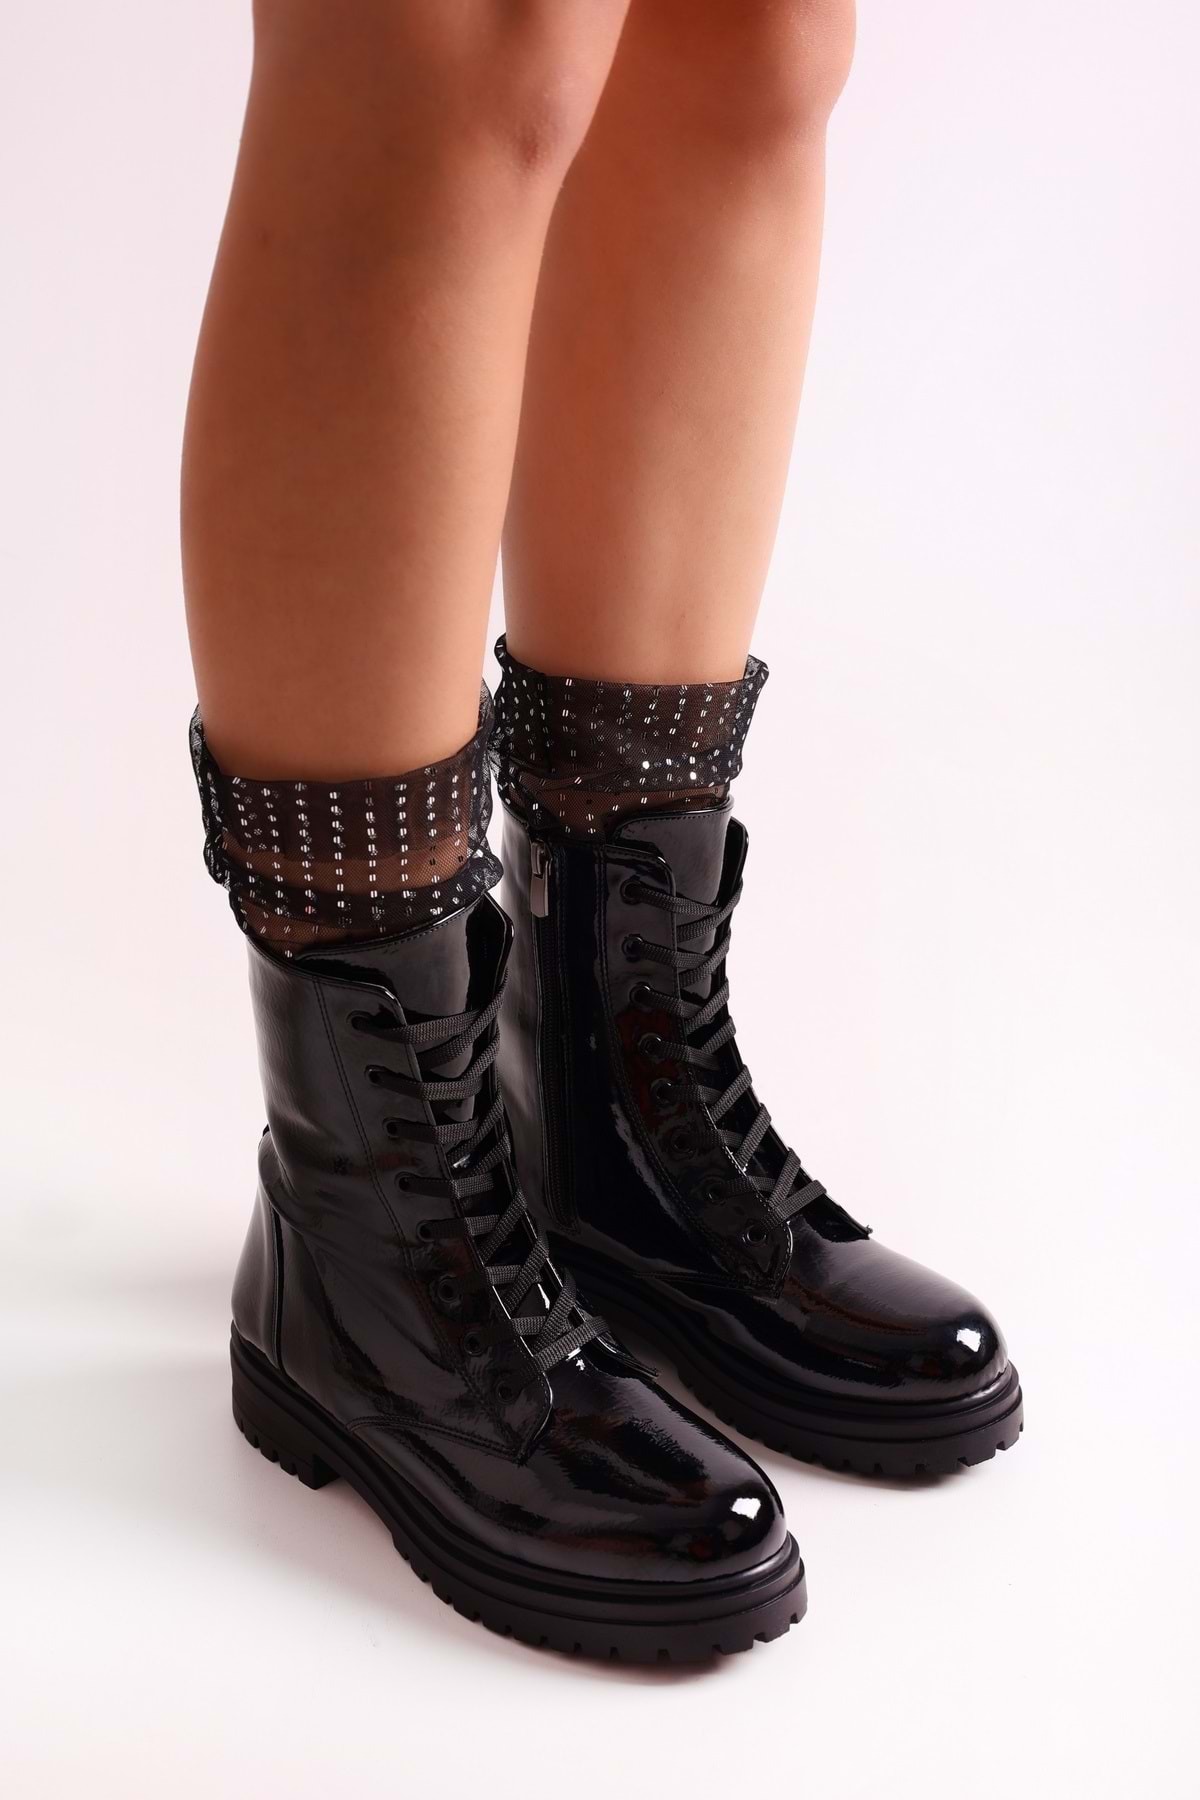 Levně Shoeberry Women's Aleah Black Patent Leather Boots Boots Black Patent Leather.